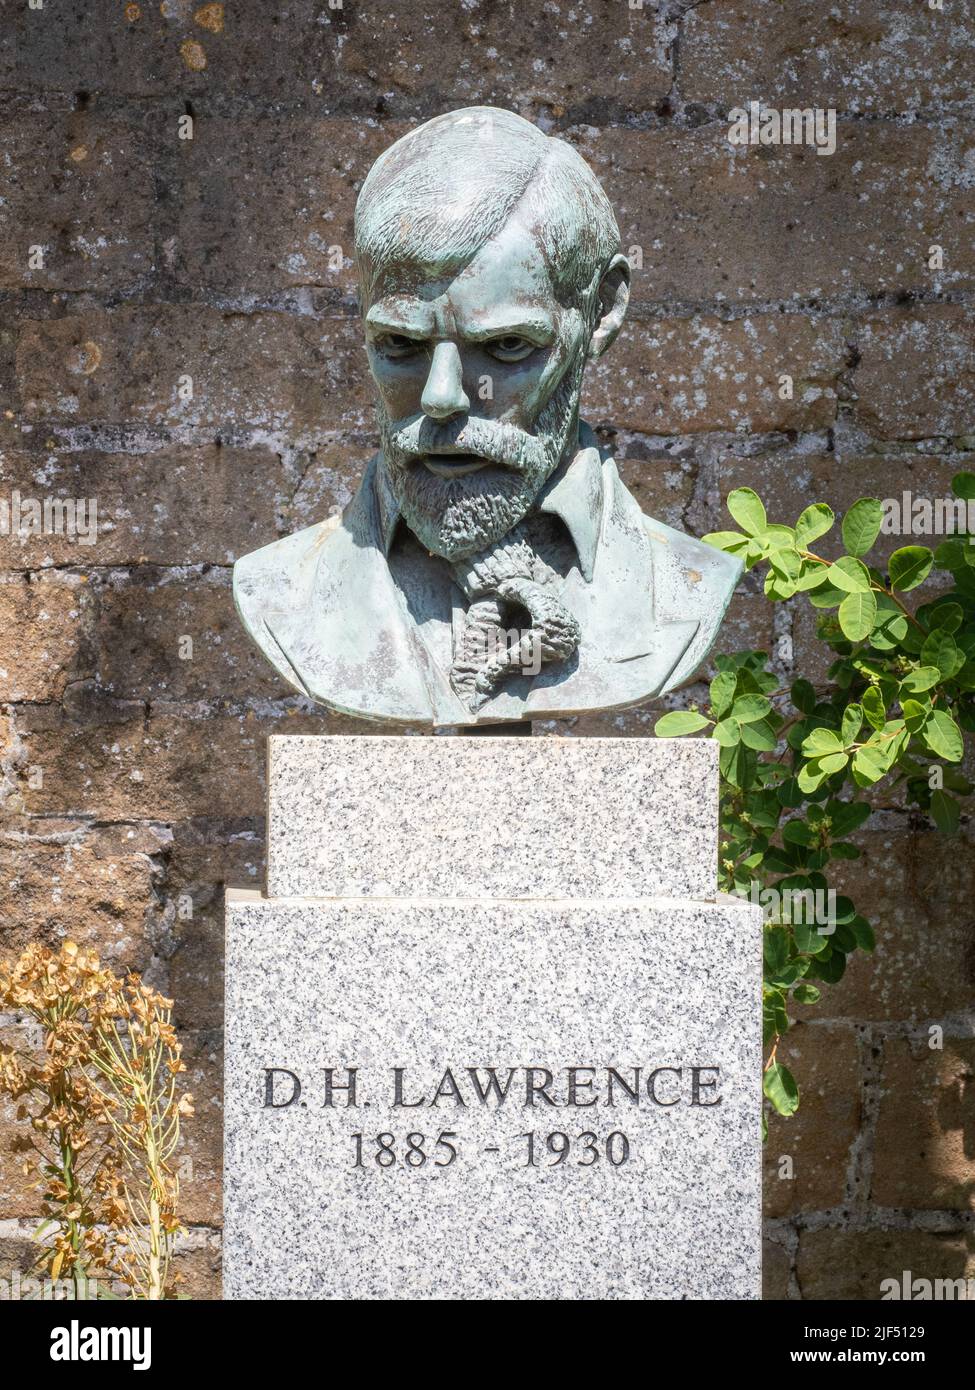 Bronzo busto di autore poeta e romanziere D H Lawrence nei giardini di Newstead Abbey nel Nottinghamshire Regno Unito Foto Stock